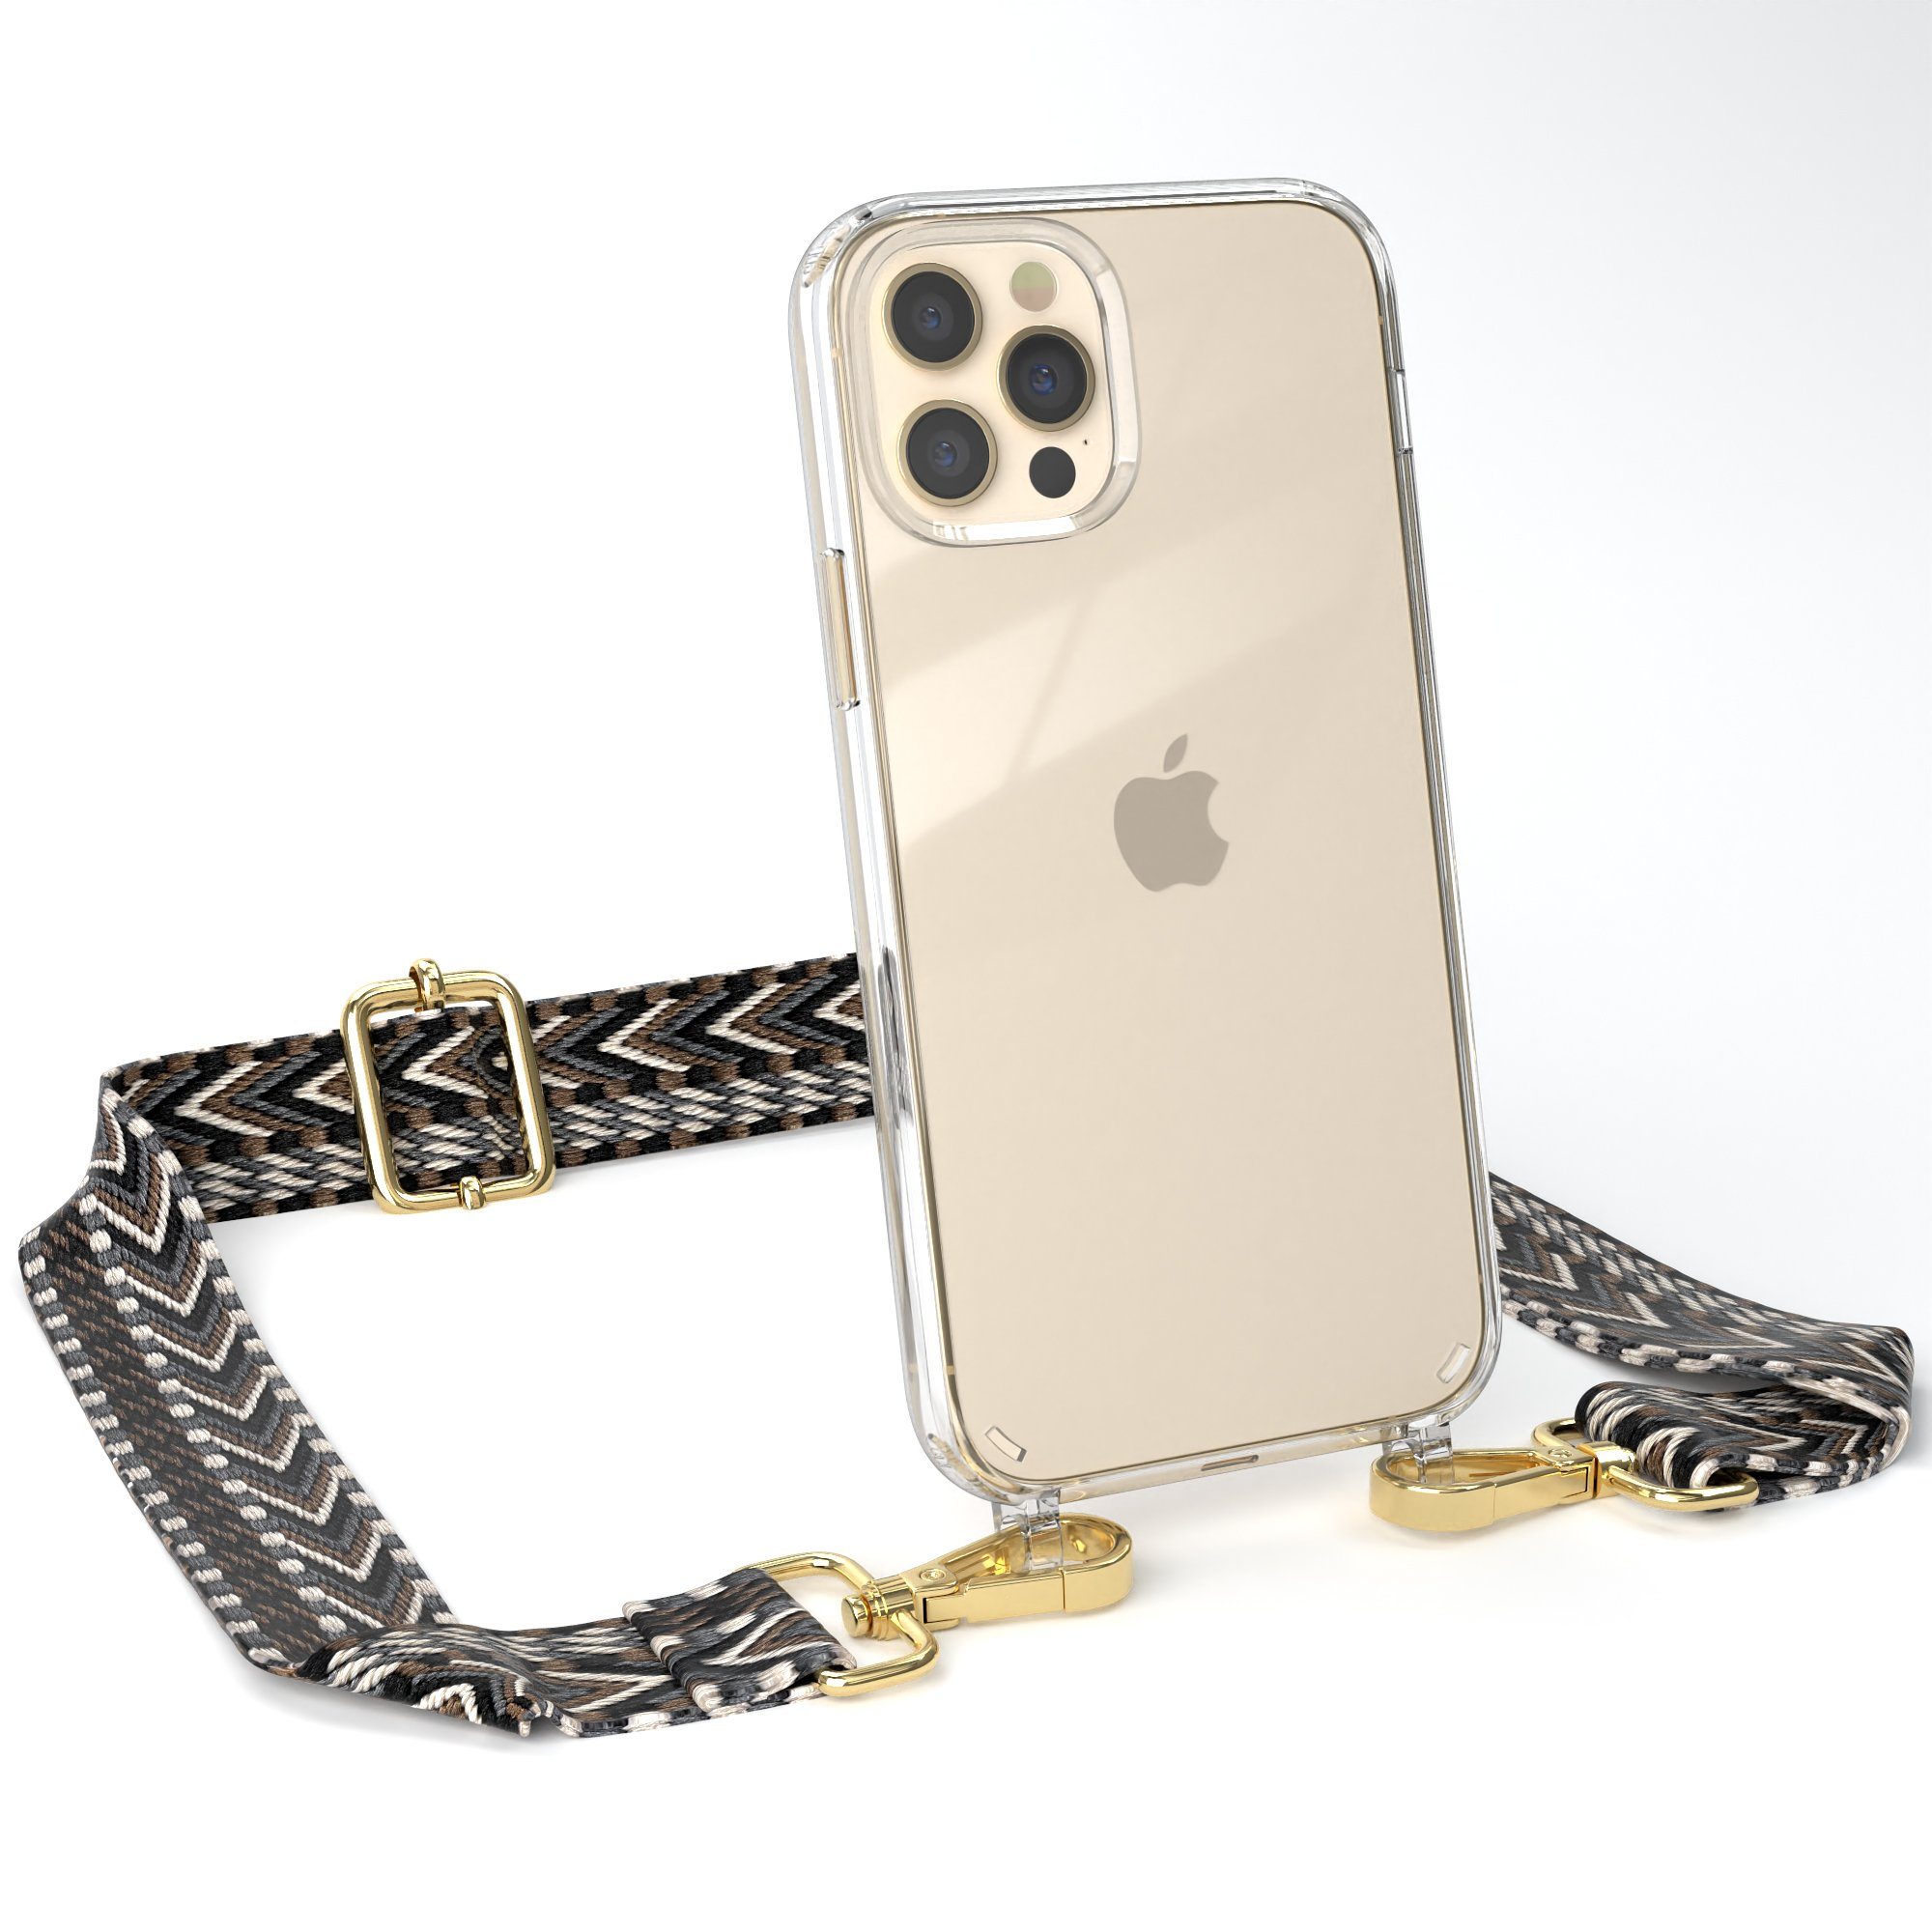 EAZY CASE Handykette Boho Umhängeband für iPhone 12 / iPhone 12 Pro 6,1 Zoll, Silicon Handyhülle mit breiter Kette modern Carabiner Necklace Grau